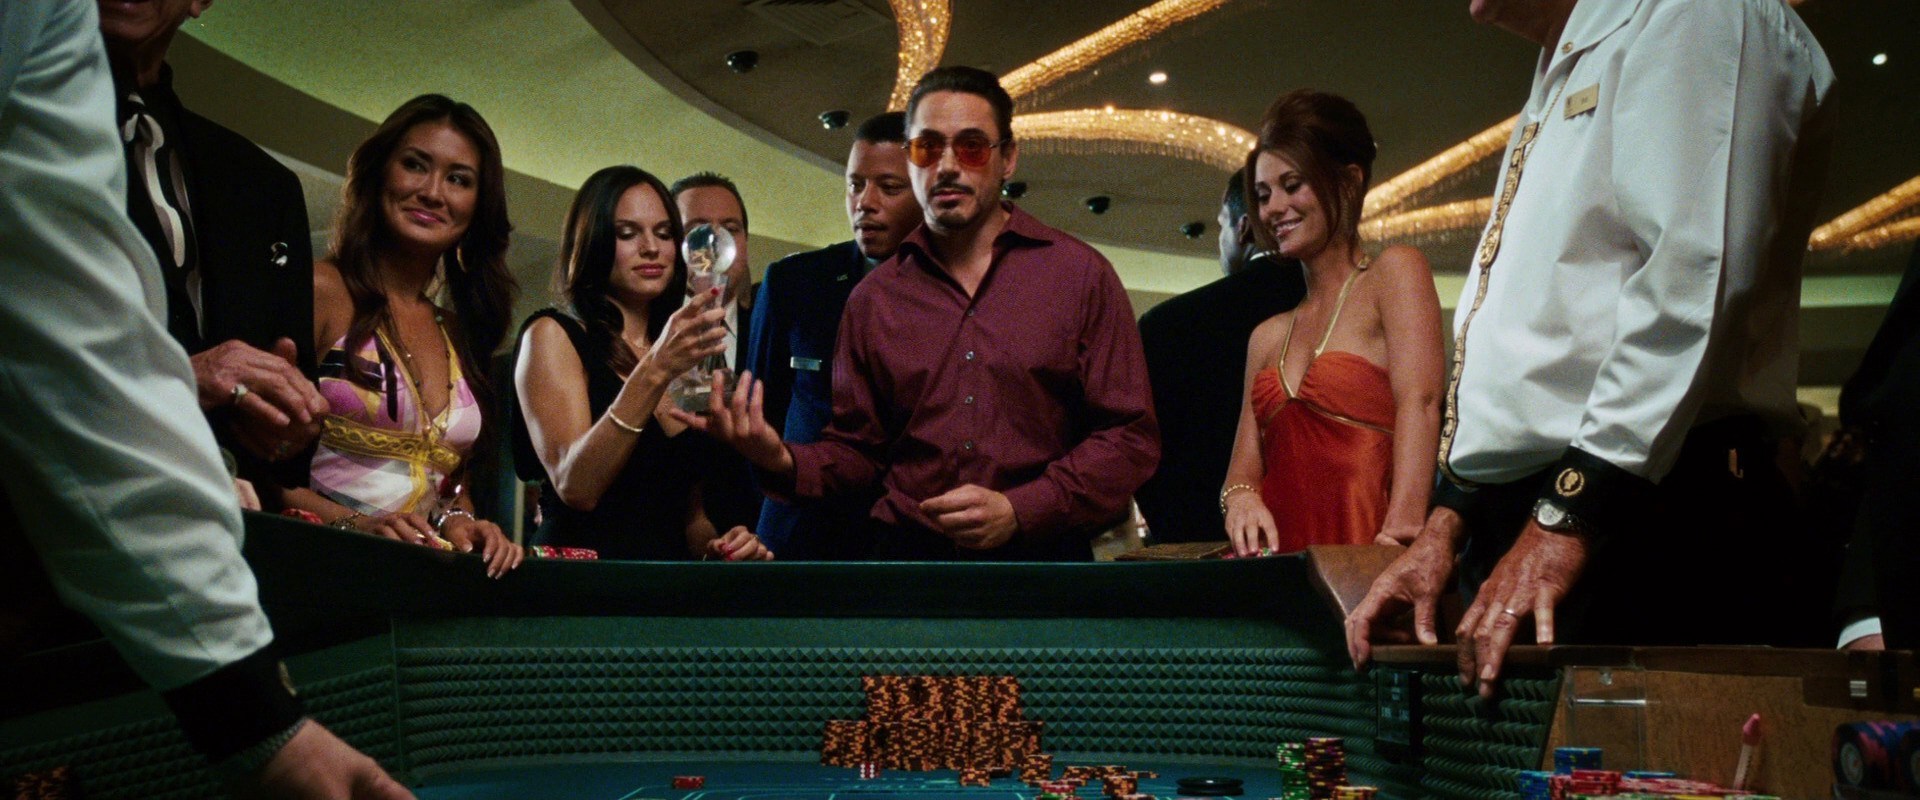 Iron Man 1 Casino Scene